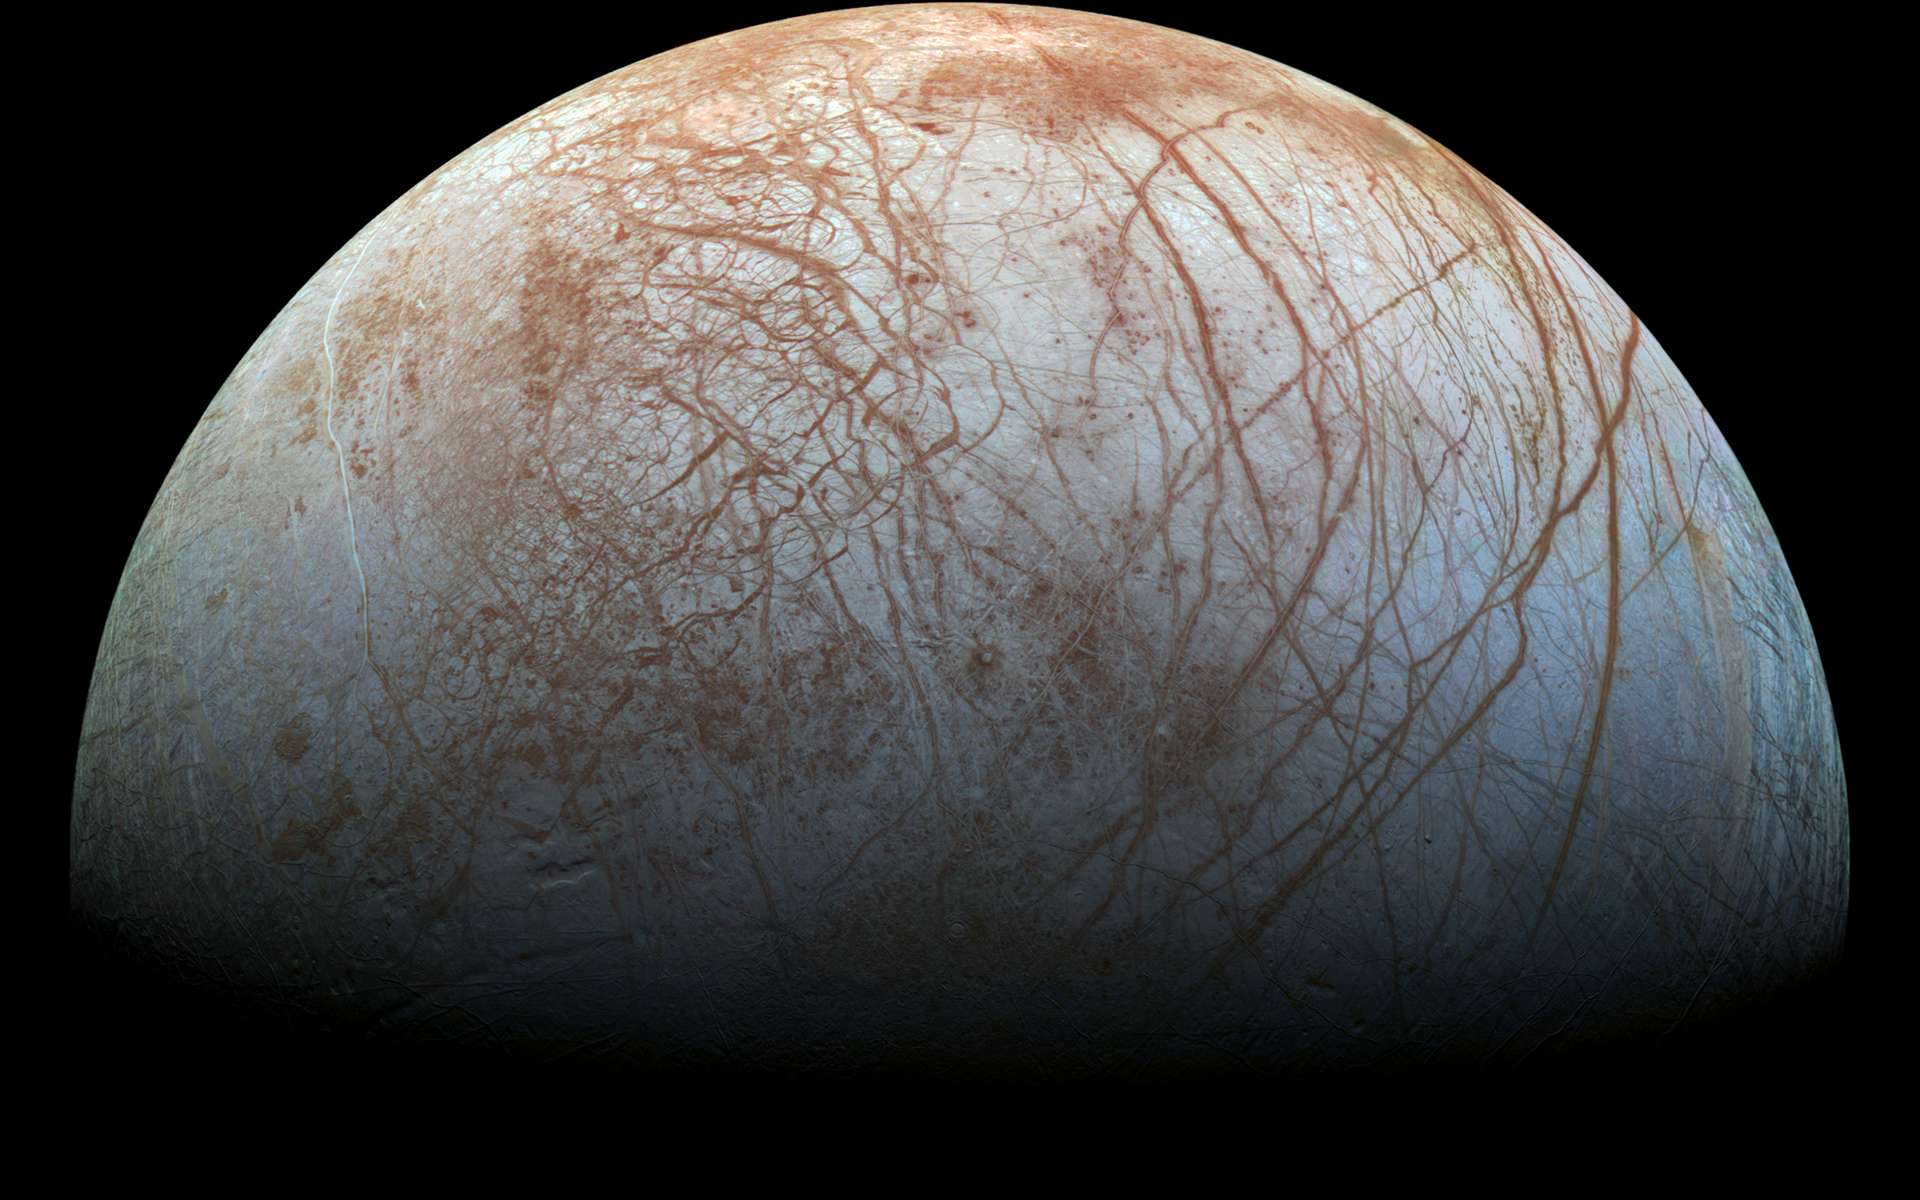 De nombreuses fissures craquèlent la surface d'Europe, l'un des quatre grands satellites de Jupiter © Nasa, JPL-Caltech, Seti Institute